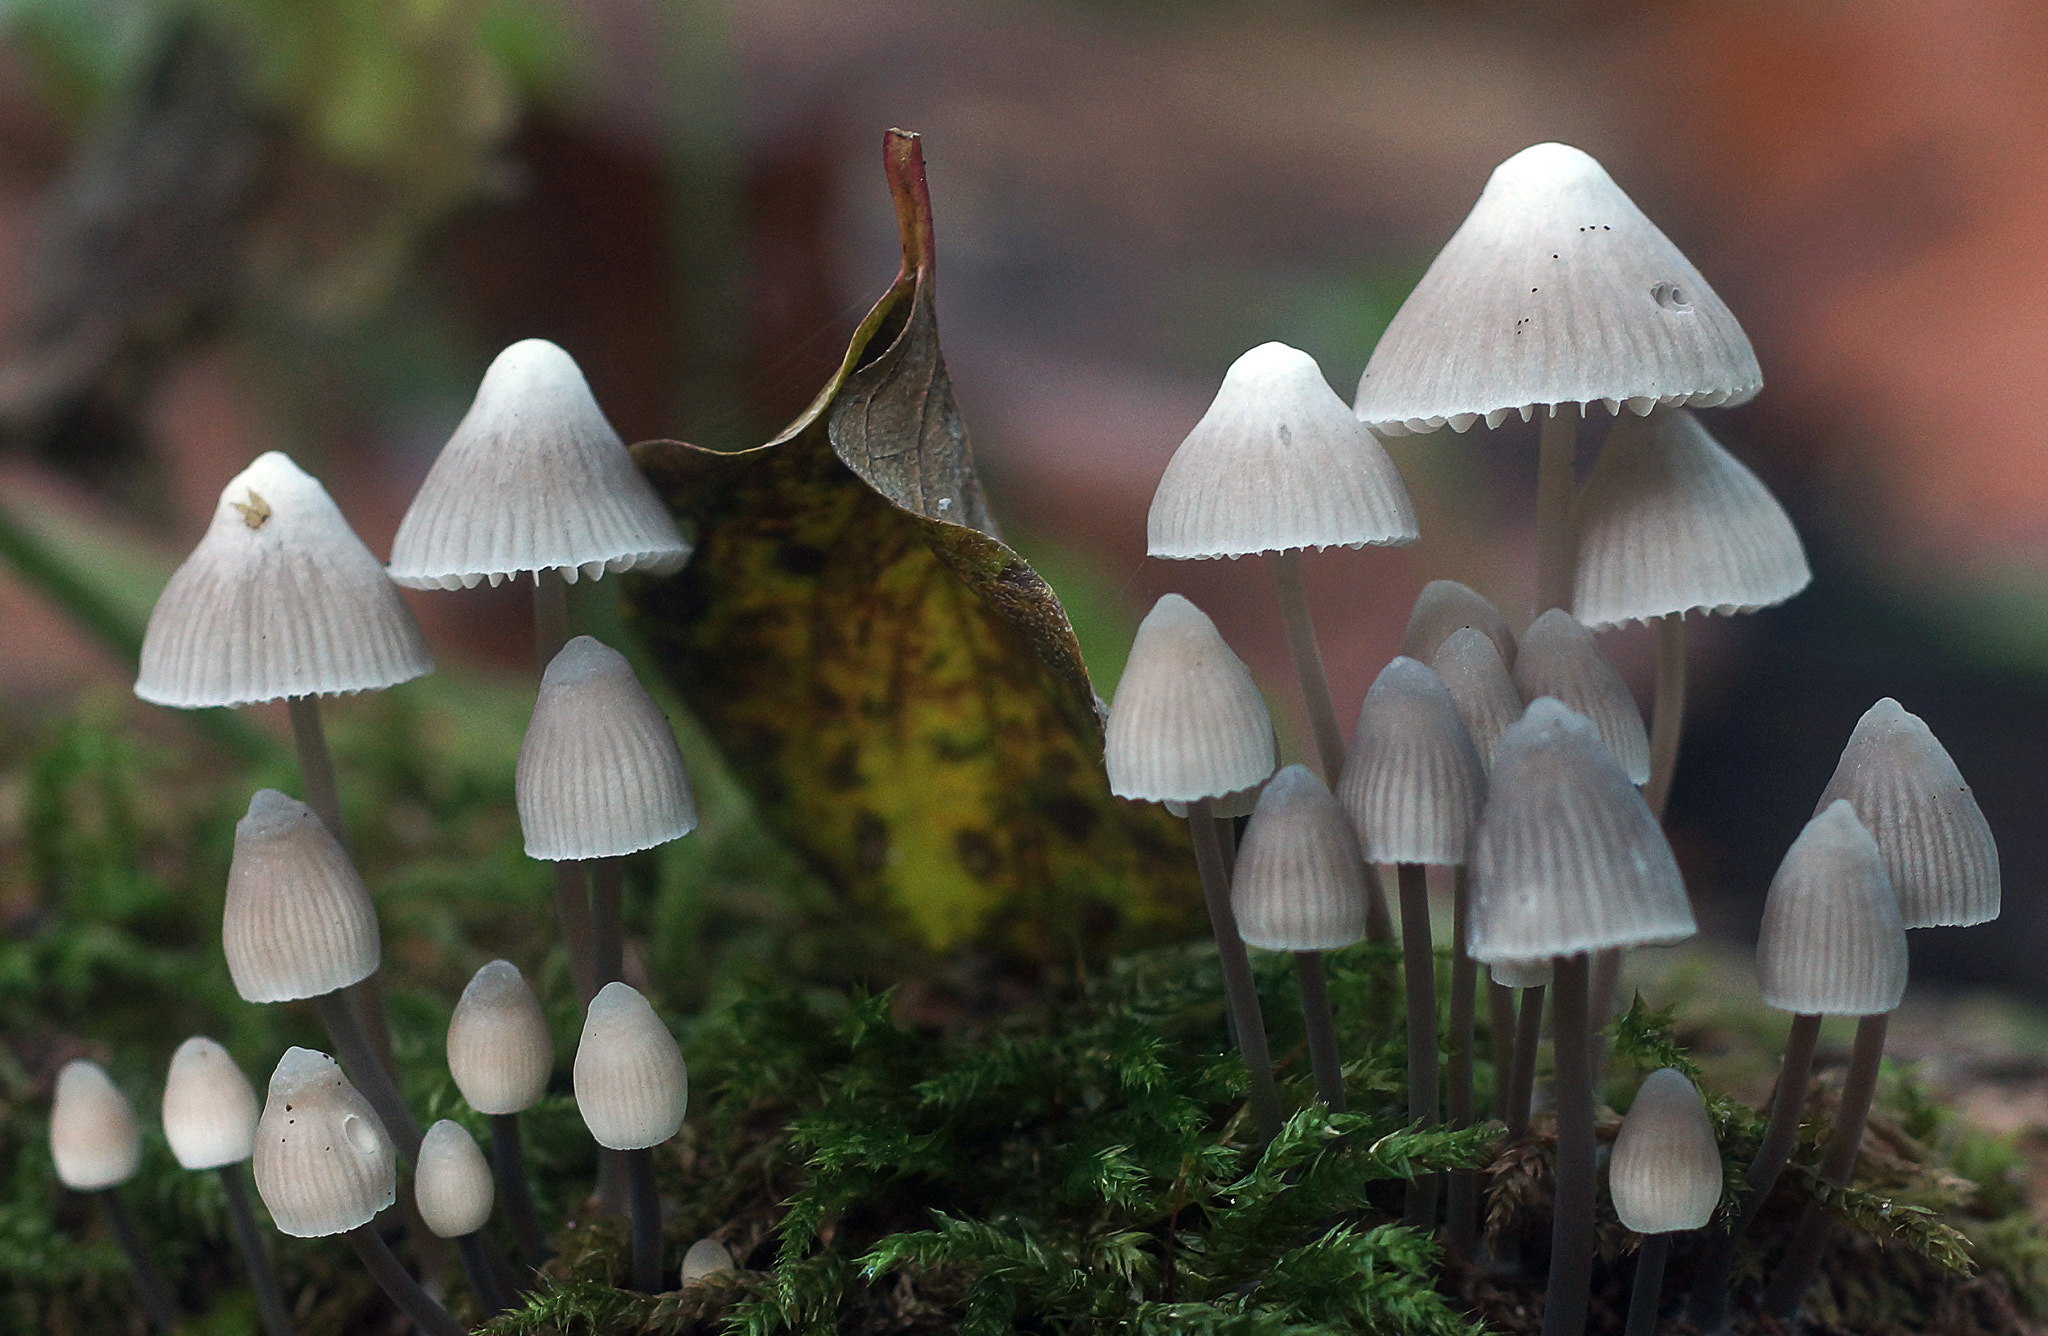 Sony SLT-A77 sample photo. Tiny white mushrooms photography